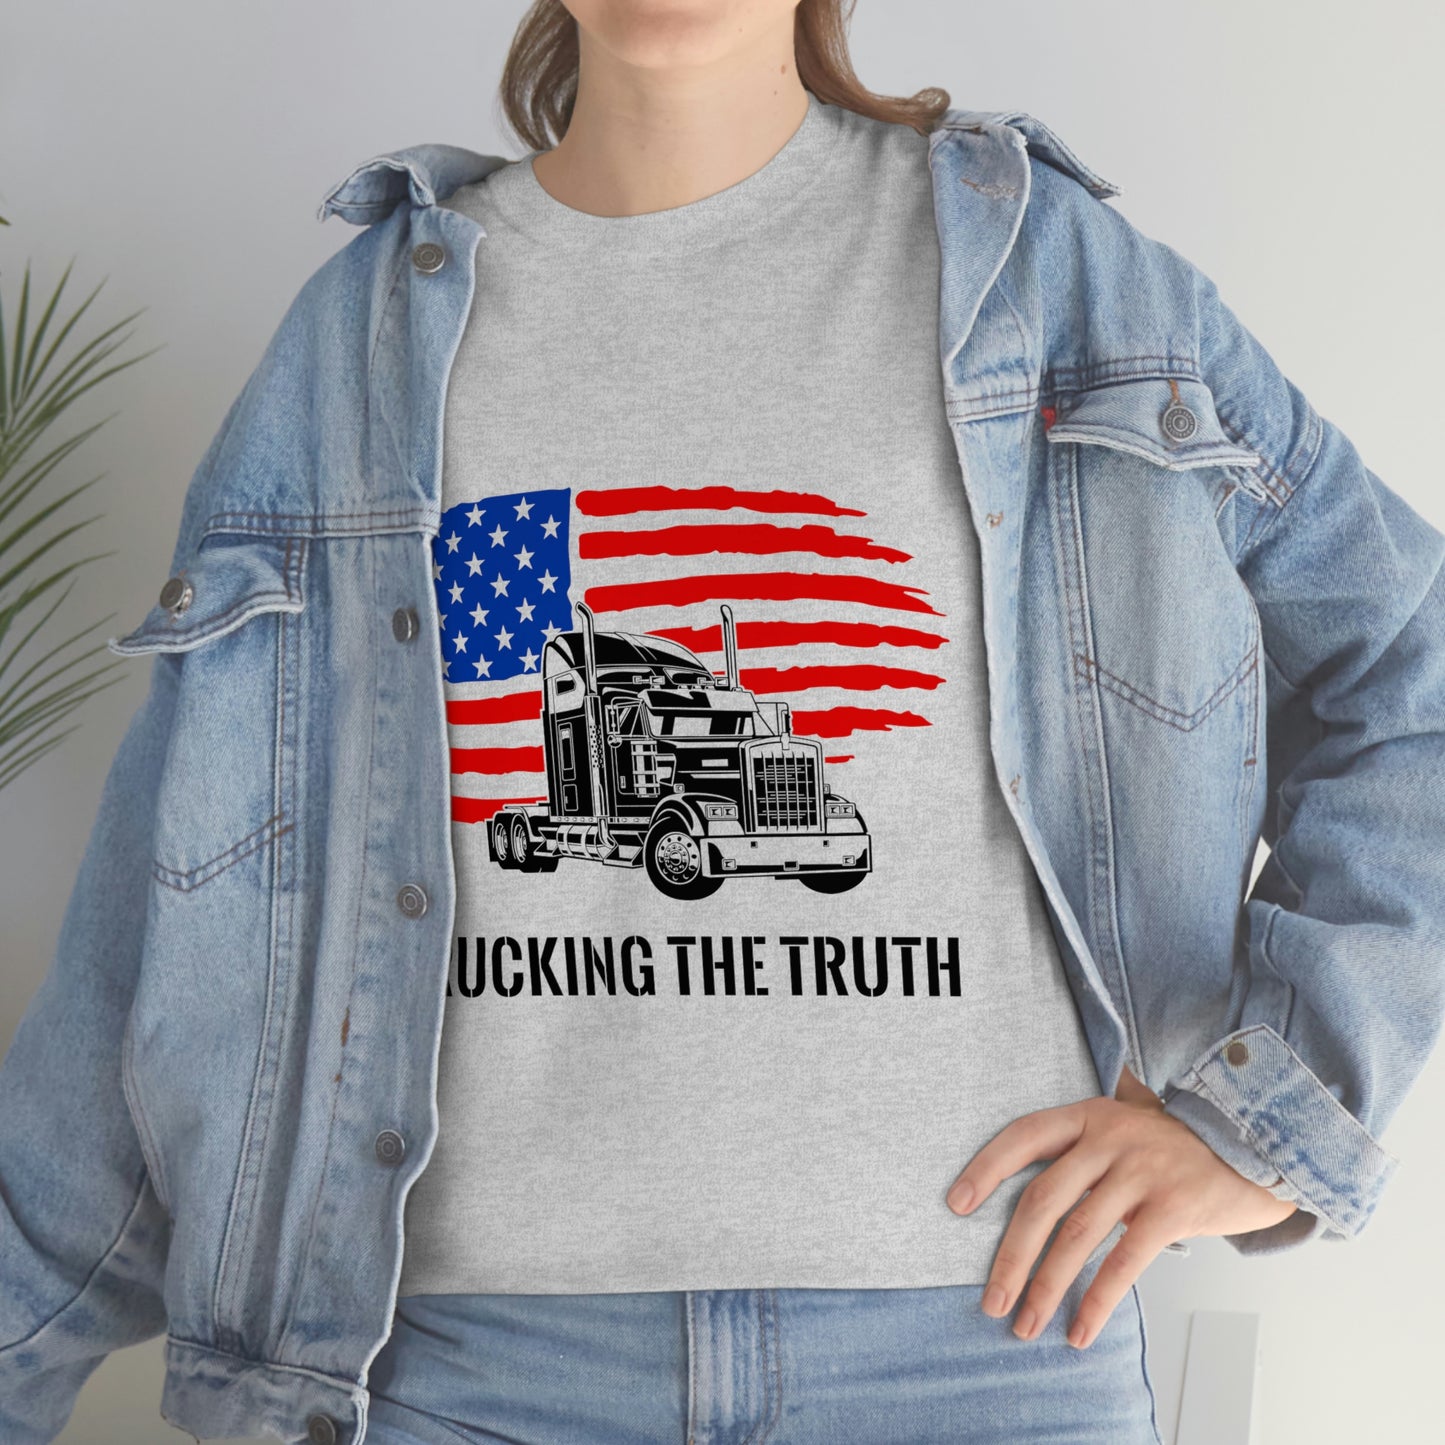 "Trucking the Truth" Unisex Heavy Cotton Tee